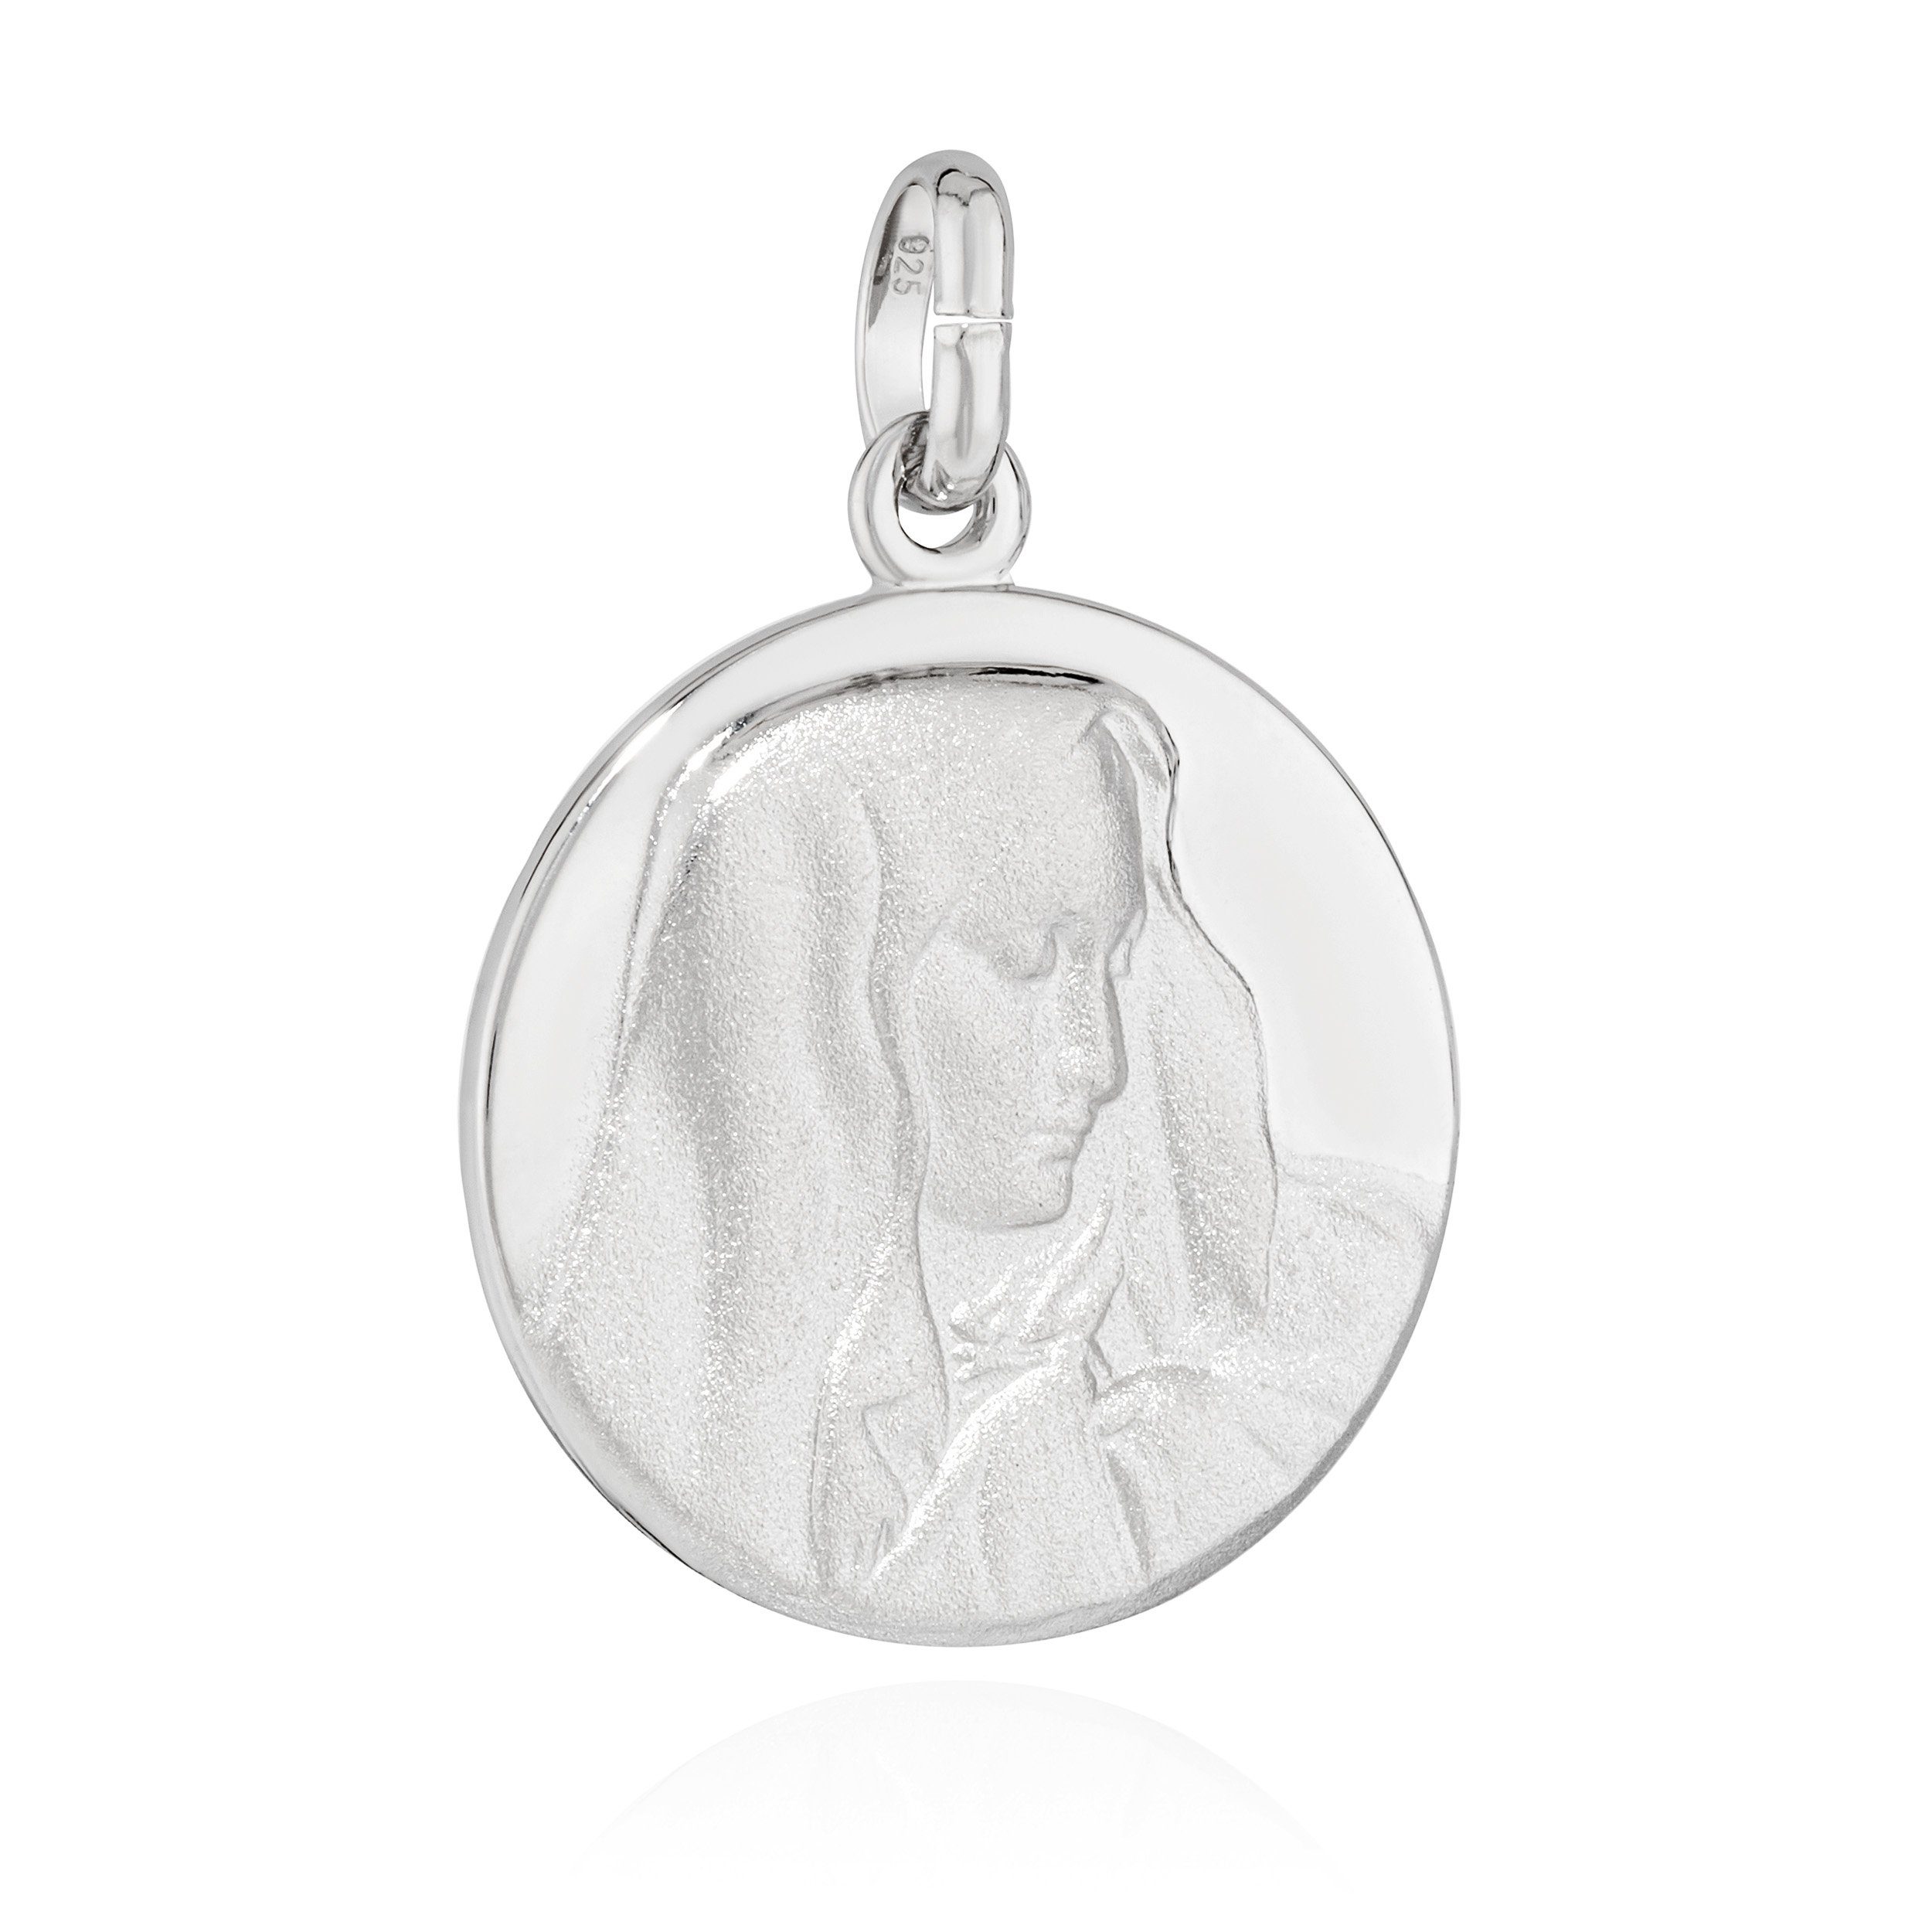 NKlaus Kettenanhänger Kettenahänger heilige jungfrau Maria 925 Silber teilmatt 16mm Talisman